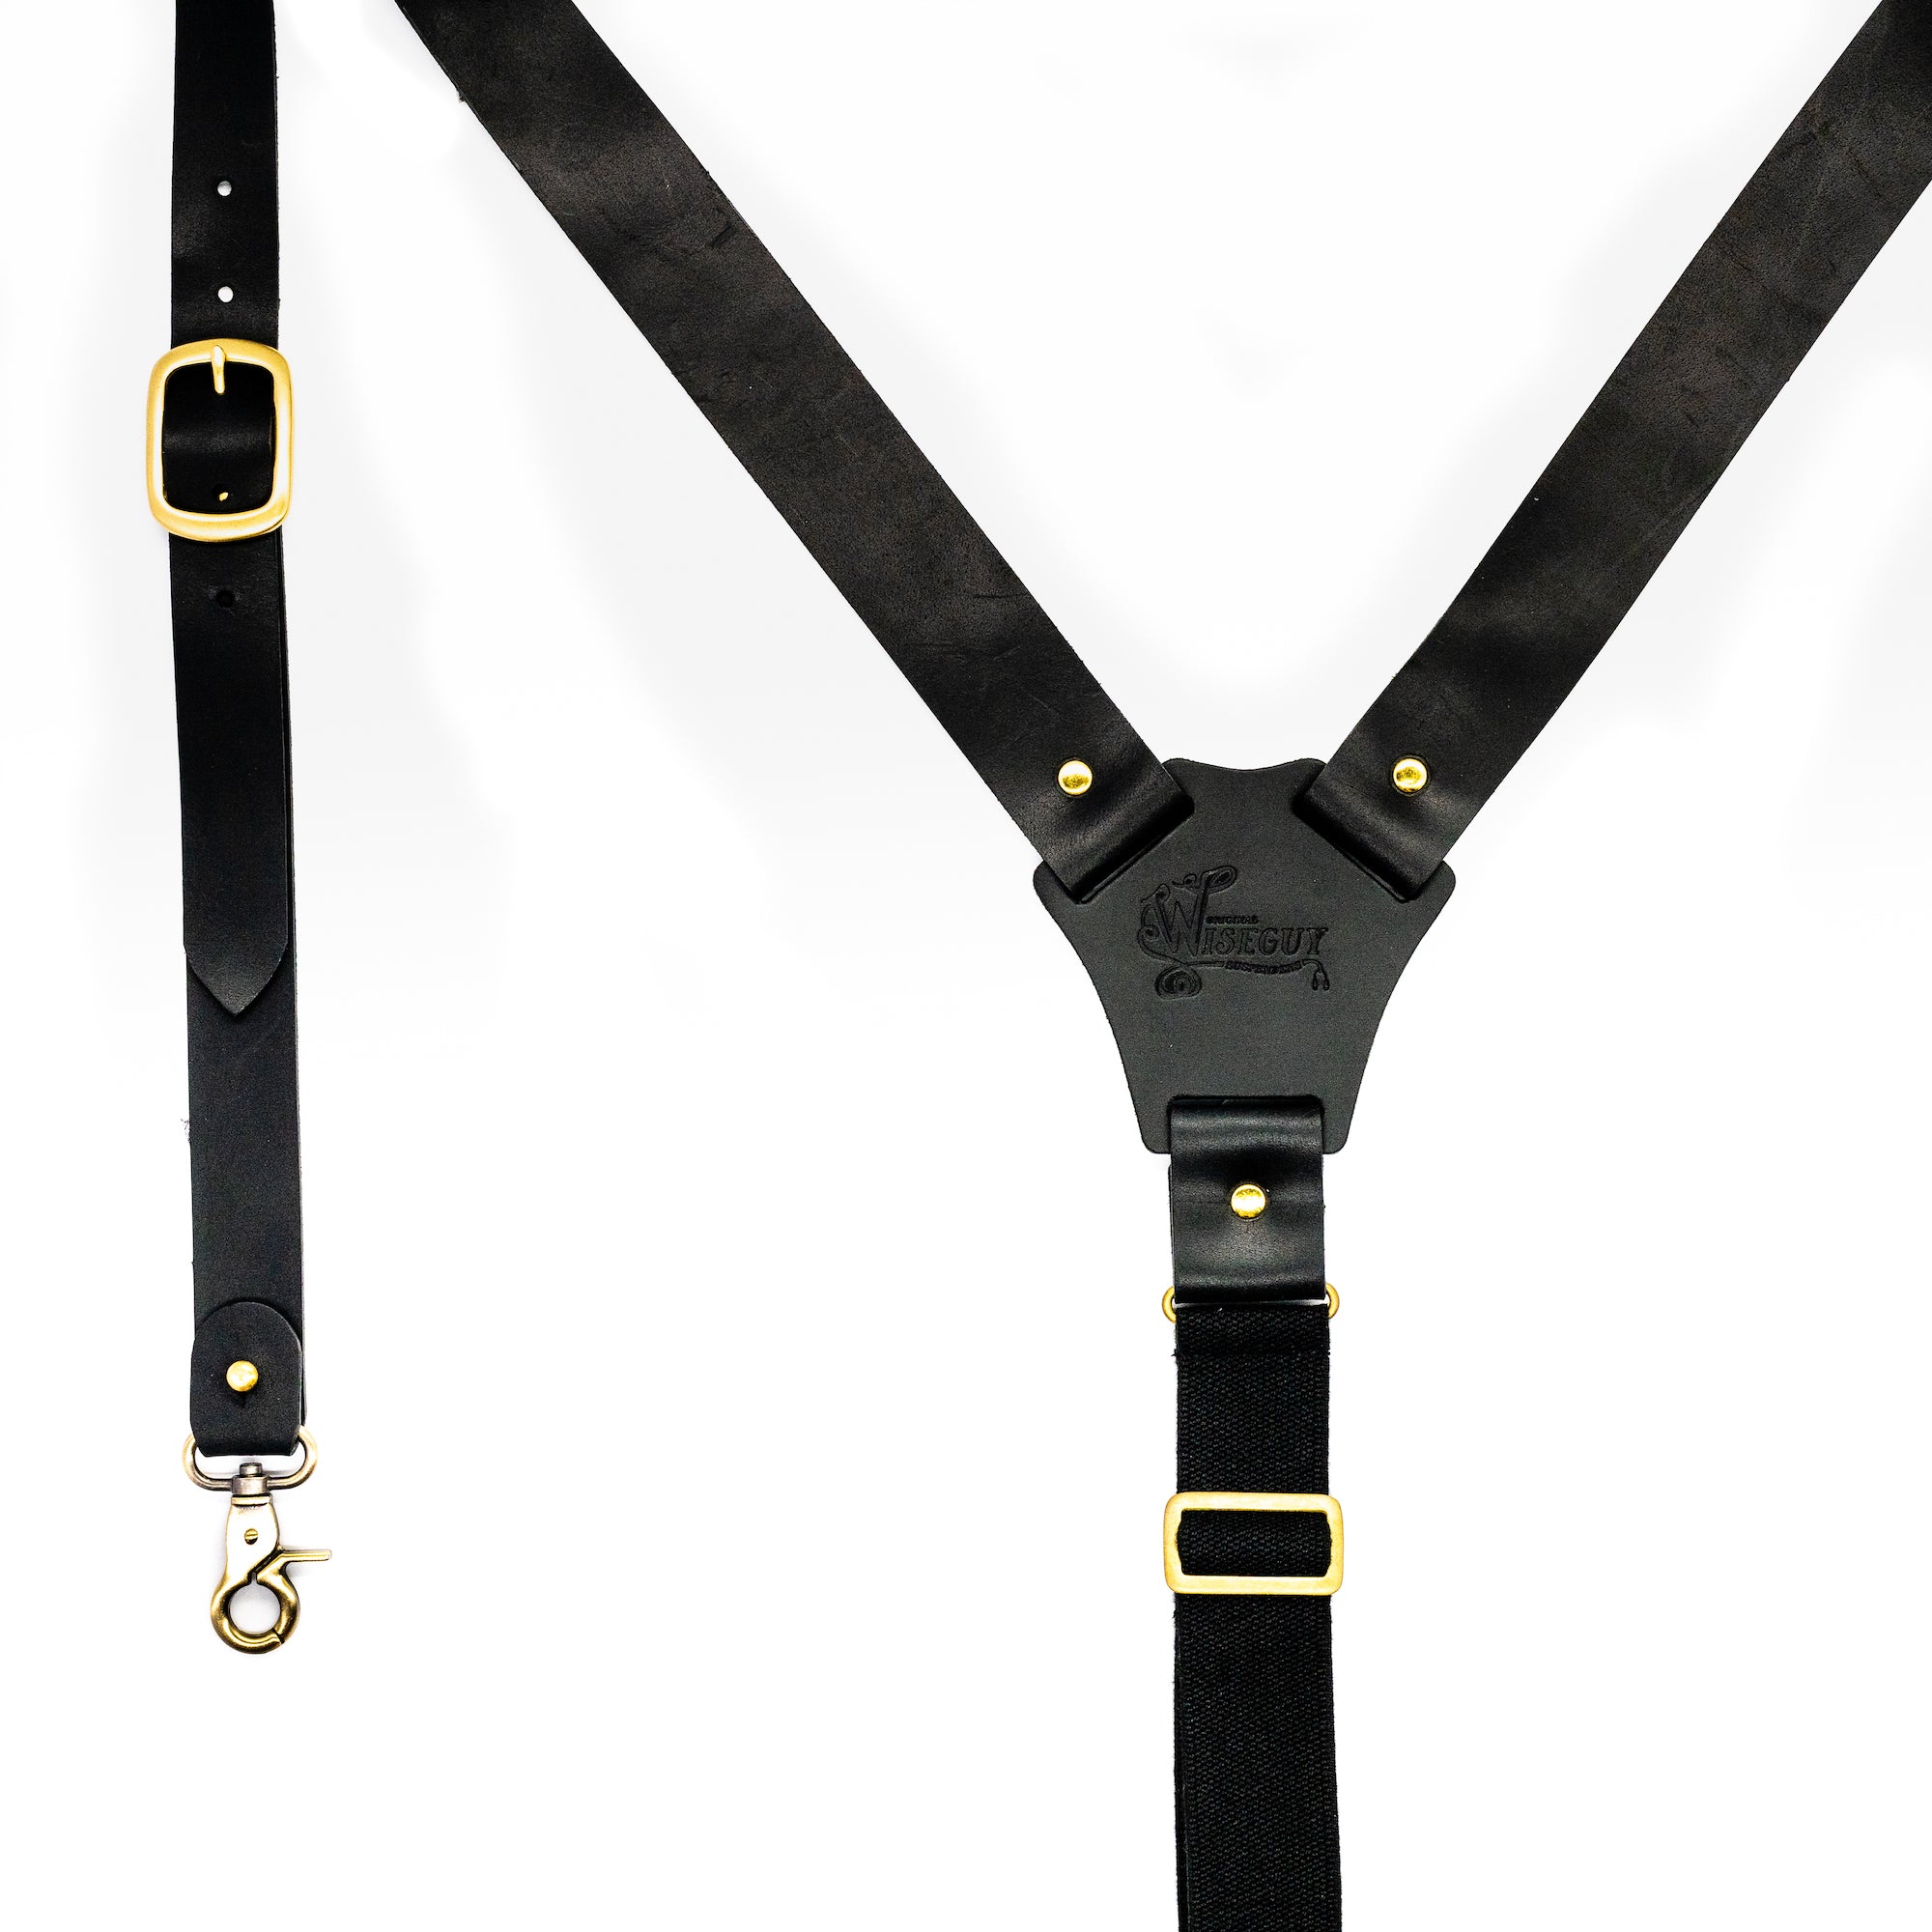 The Hershel Flex Wide Suspenders No. L7011